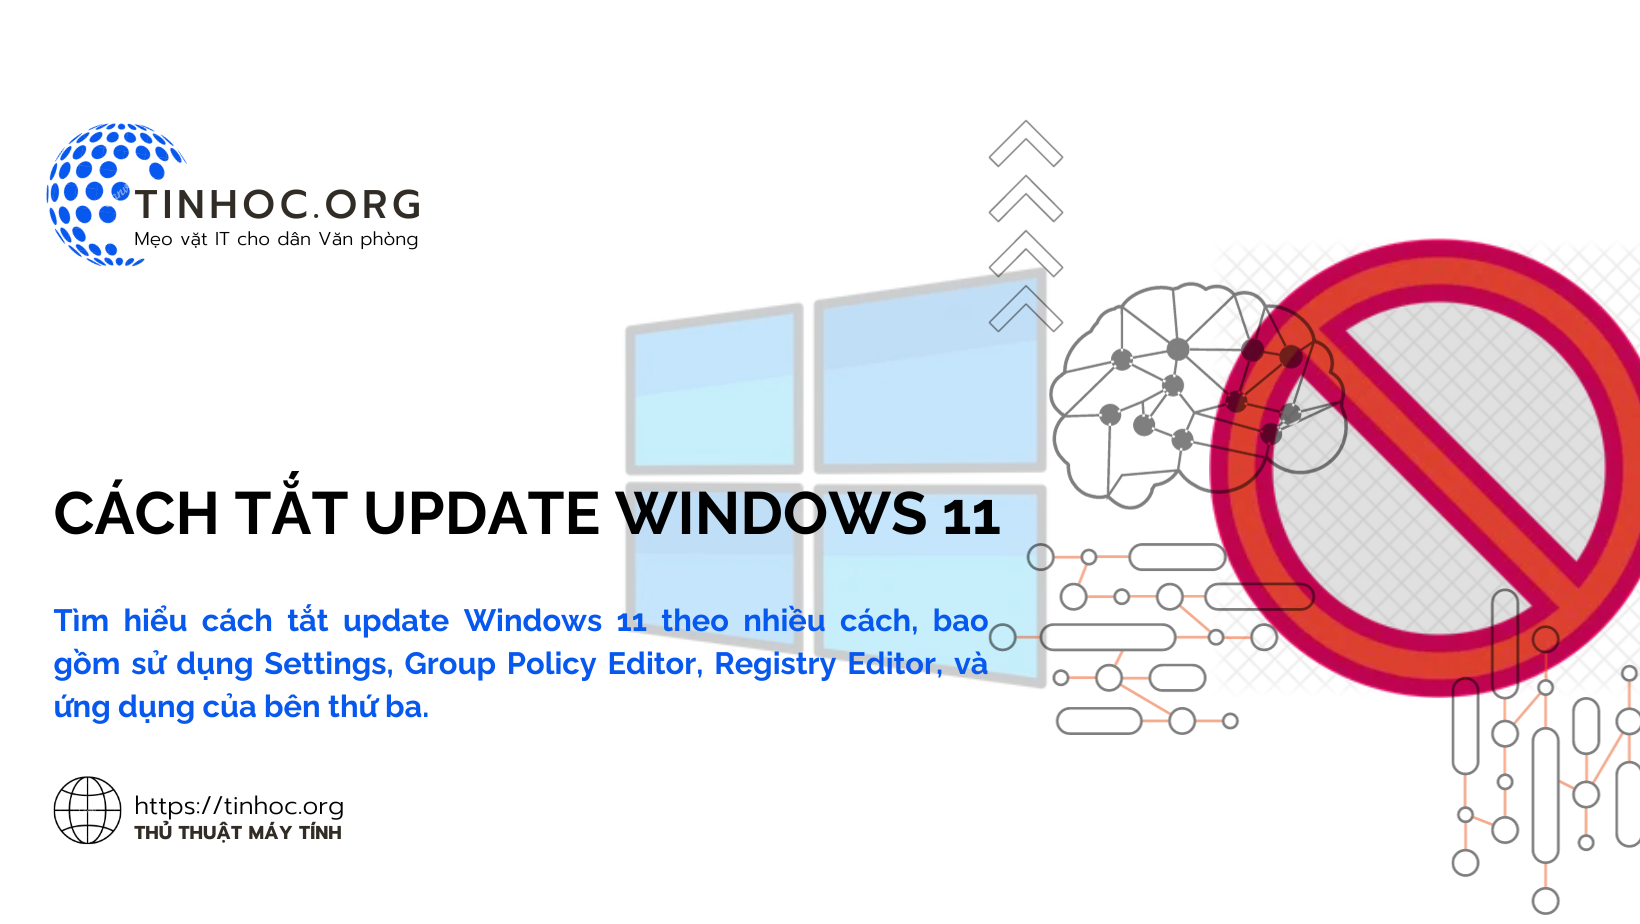 Cách tắt update Windows 11